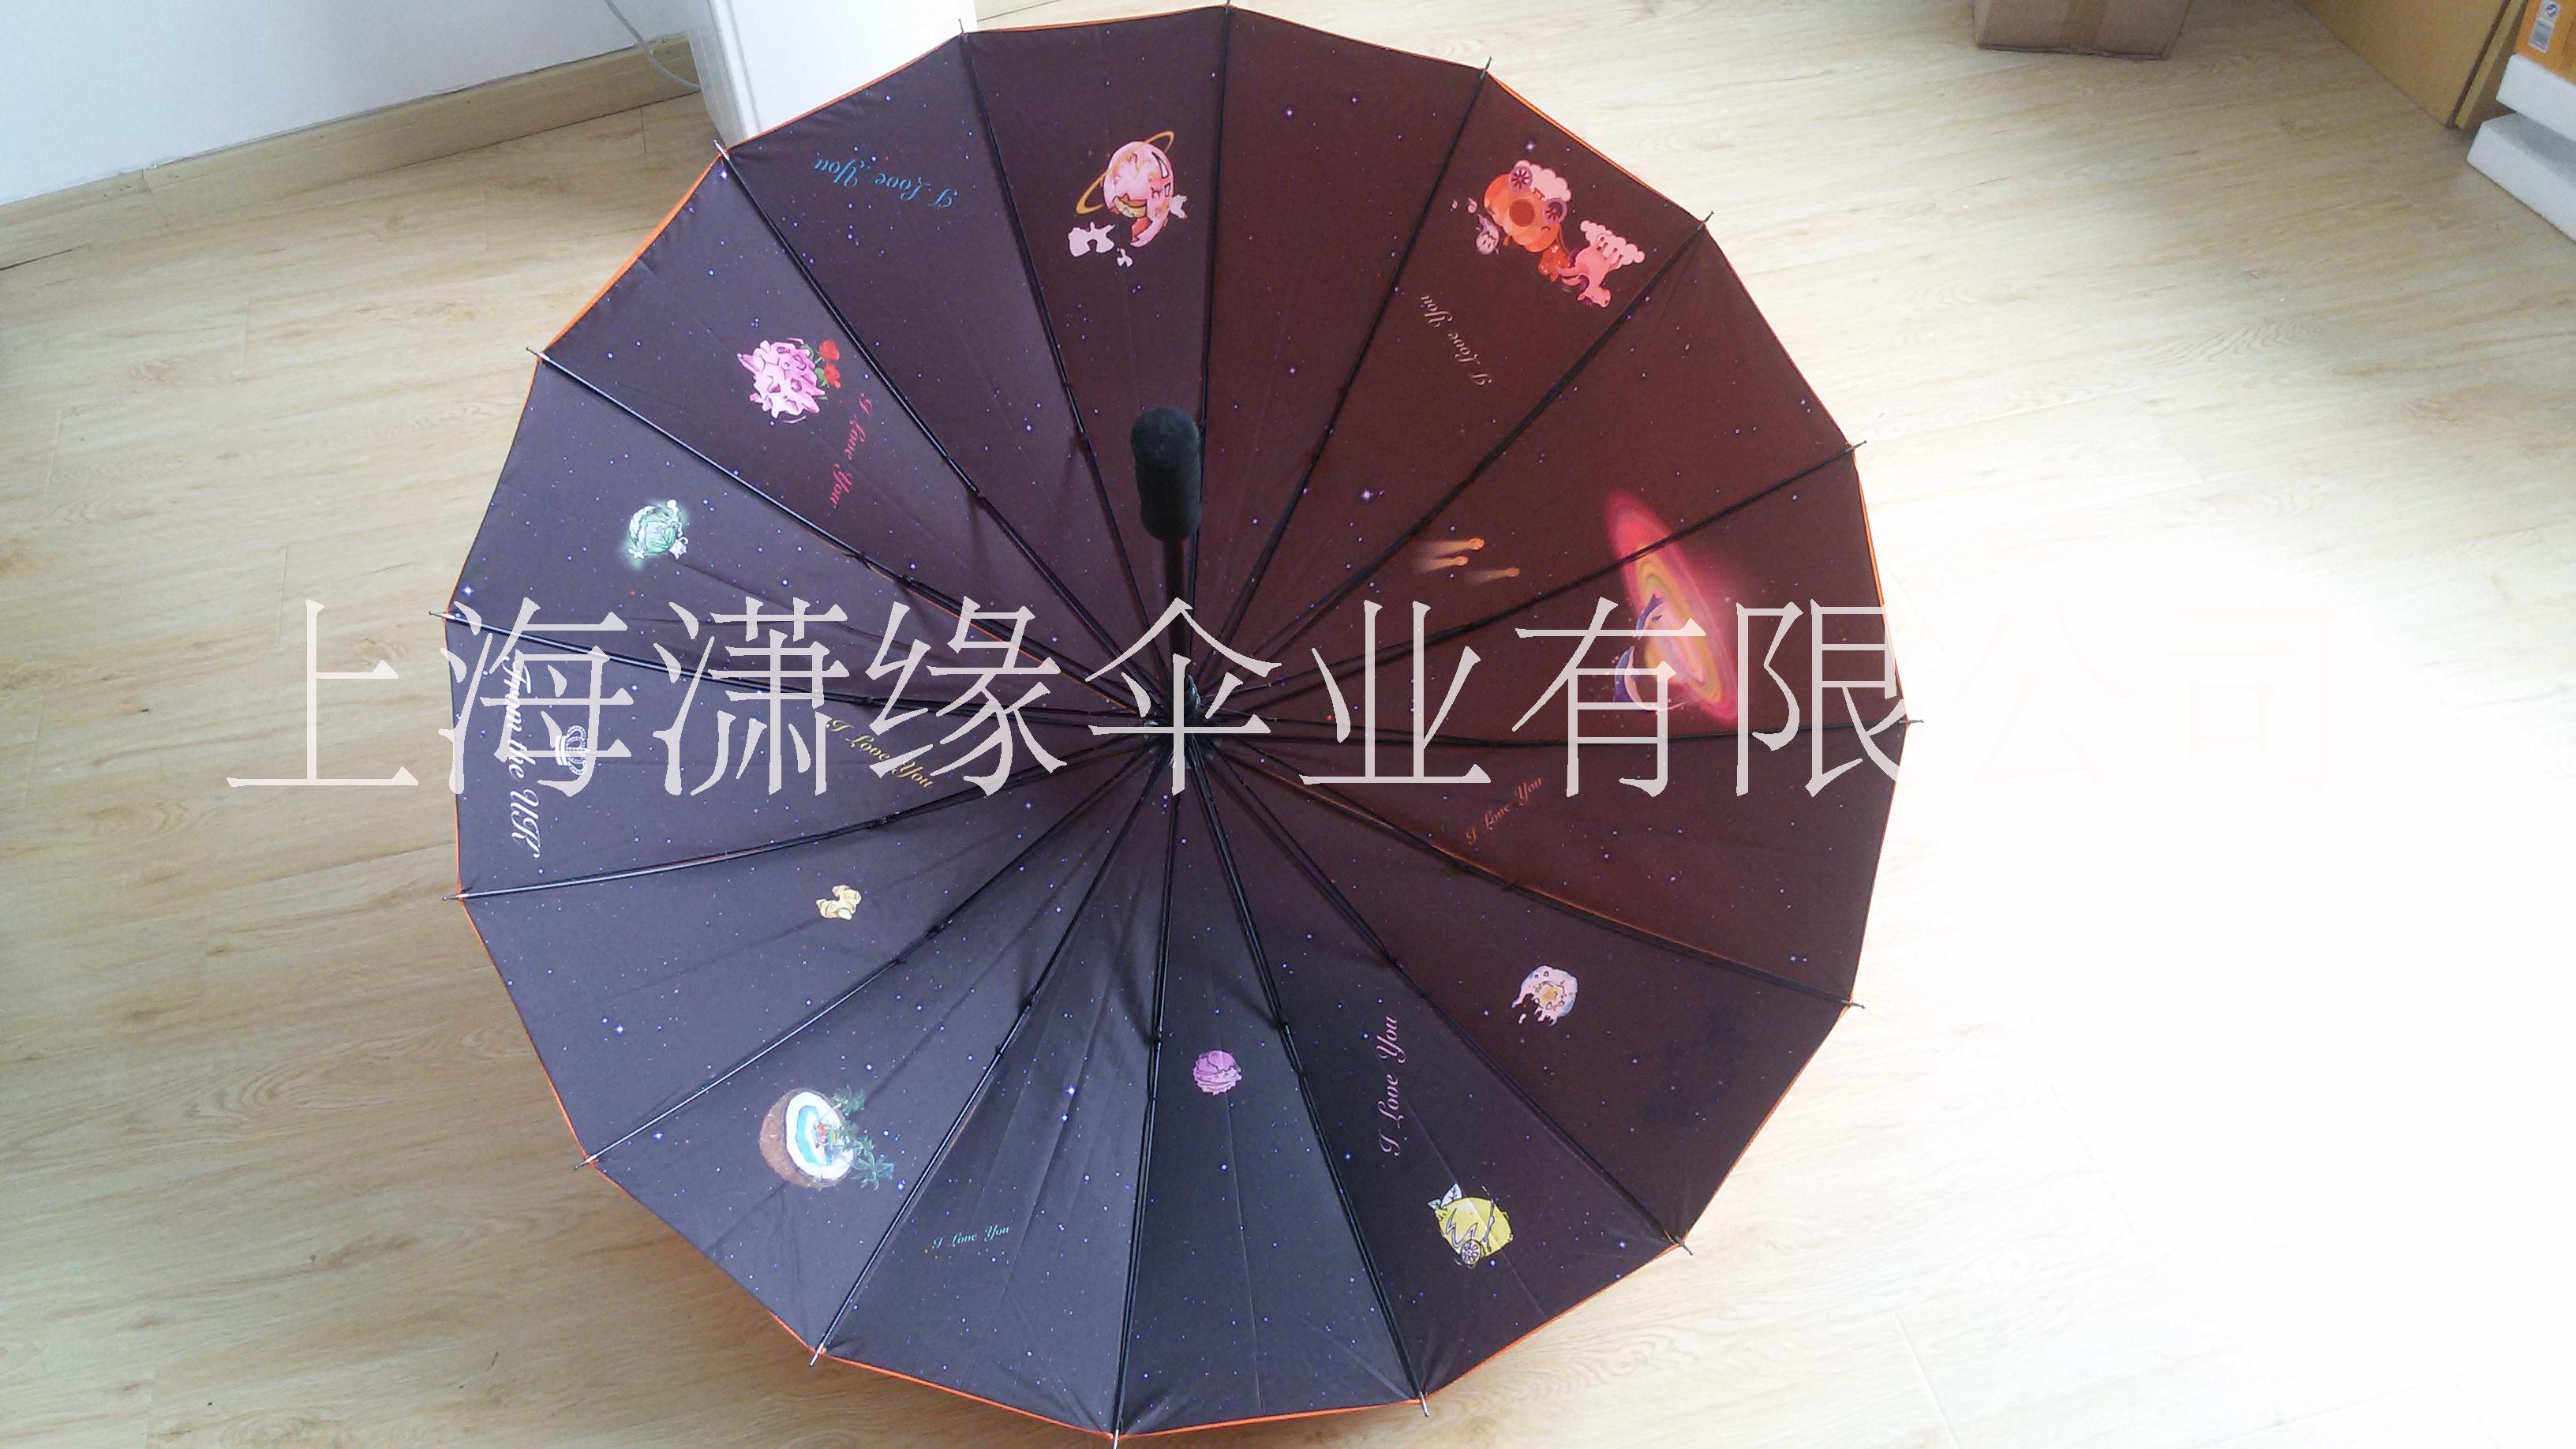 上海16骨广告伞厂 16骨广告礼品伞批发 16骨广告伞上海雨伞厂图片